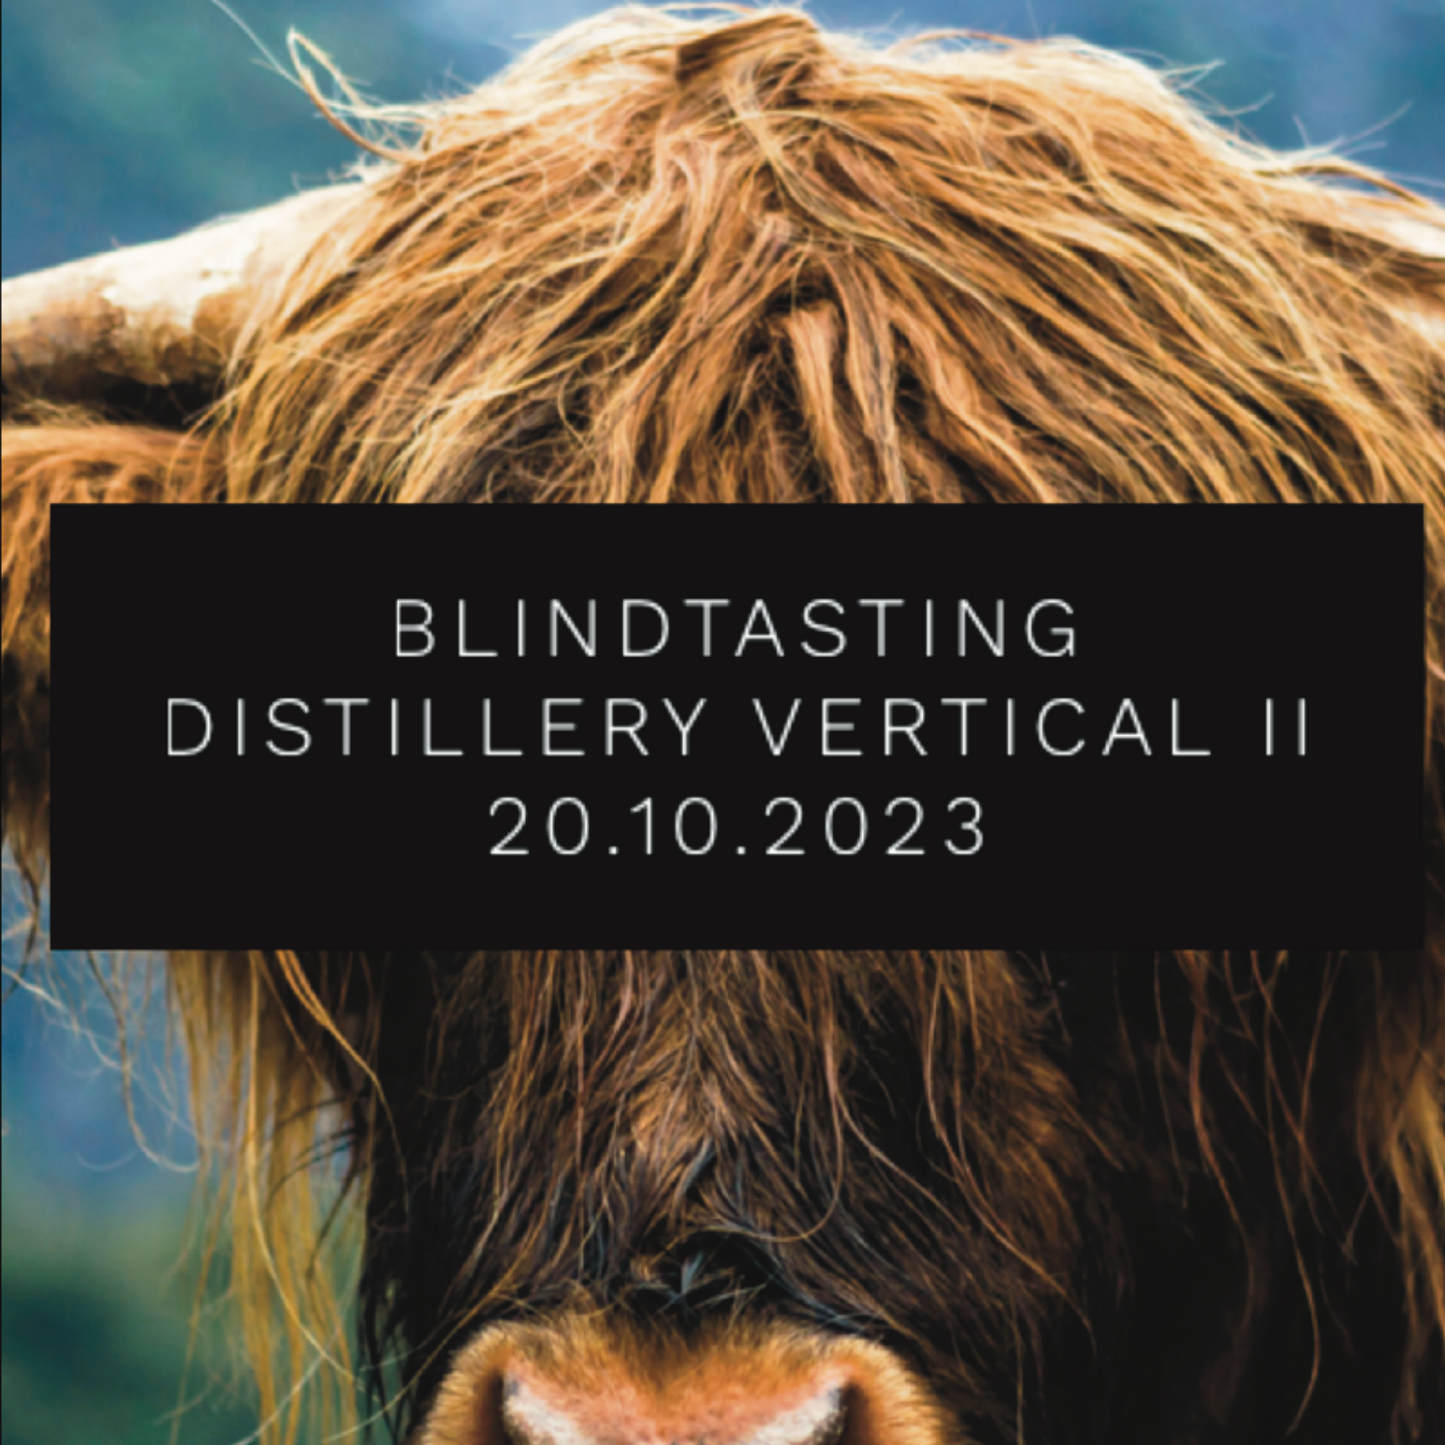 Onlinetasting - Distillery Vertical Blindtasting (We talk Malts 20.10.2023)